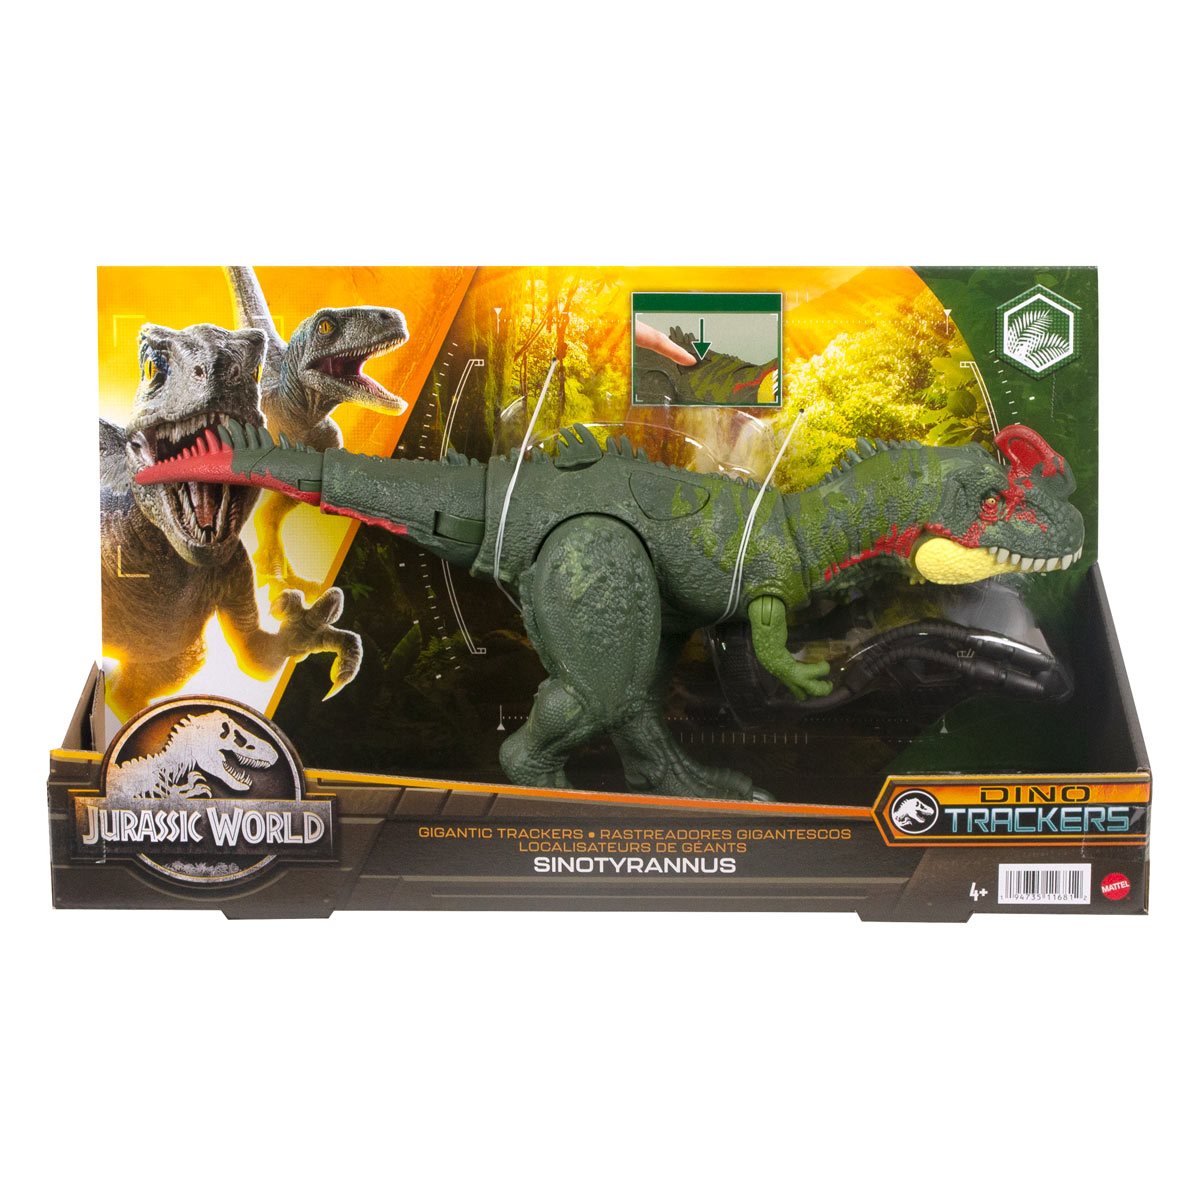 Jurassic World Dino Trackers - Figurine Gigantic Trackers